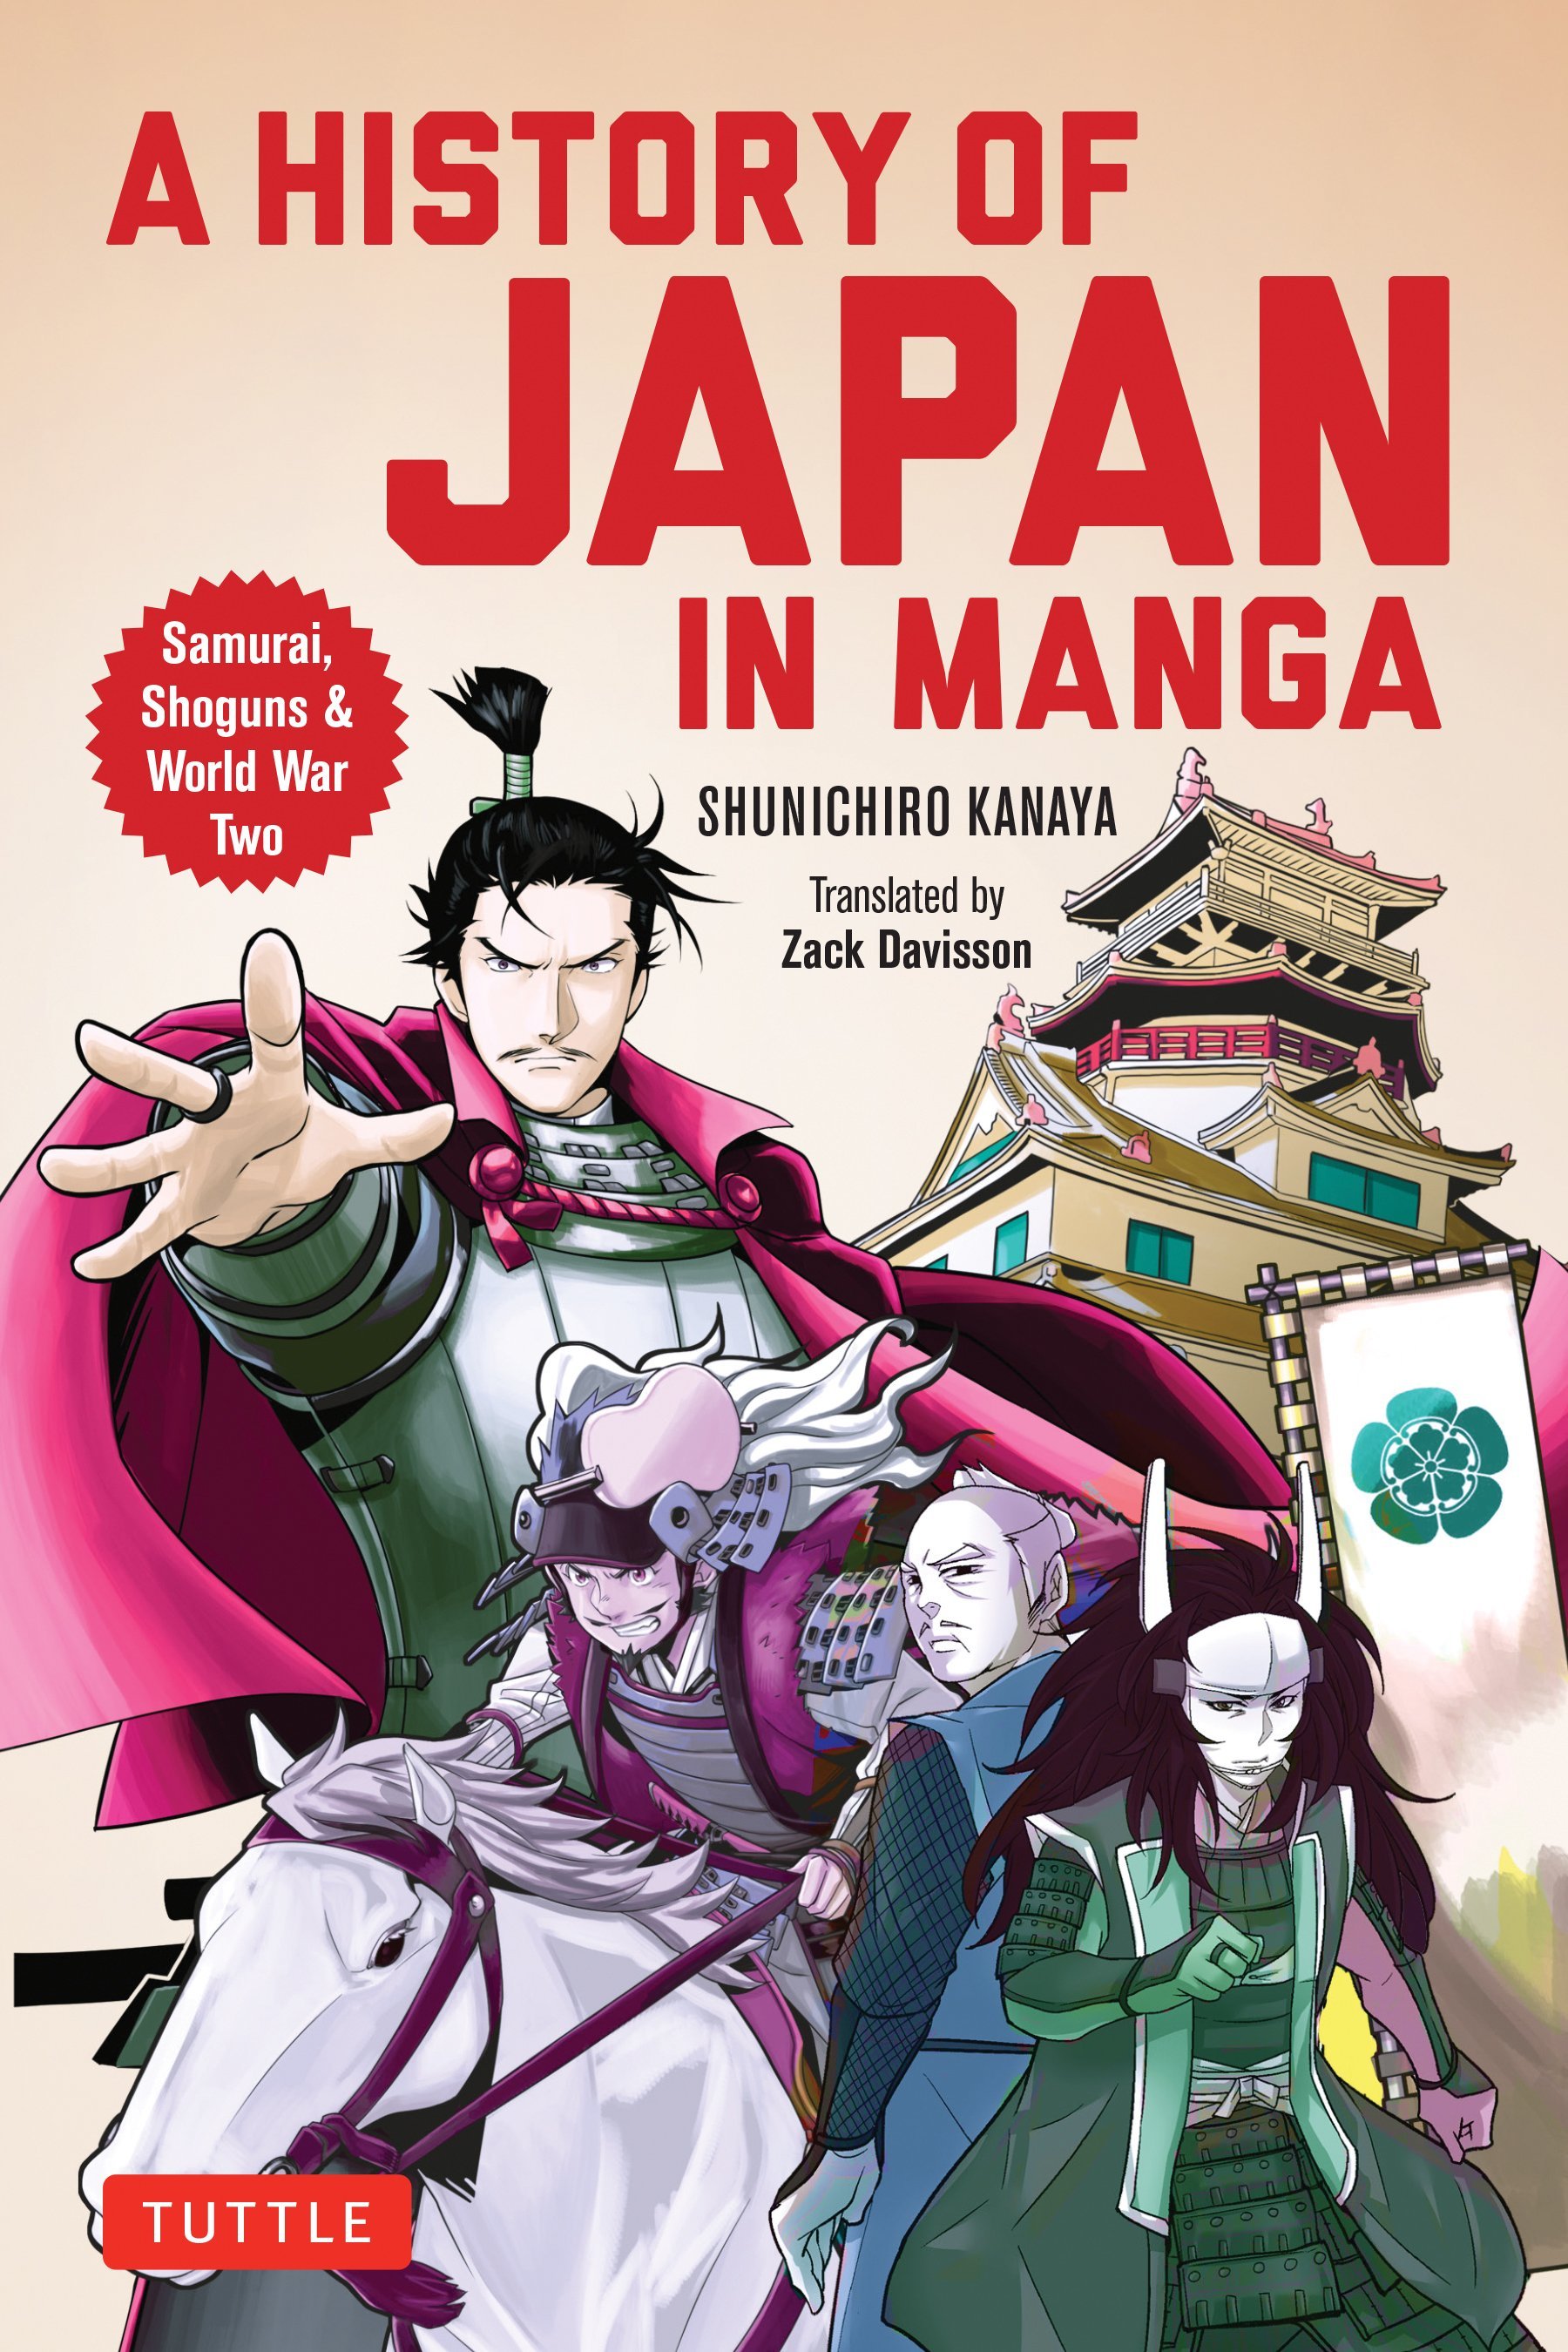 Giappone - recensioni: Natsuo Kirino, Matsumoto Seichō, Ito Ogawa 